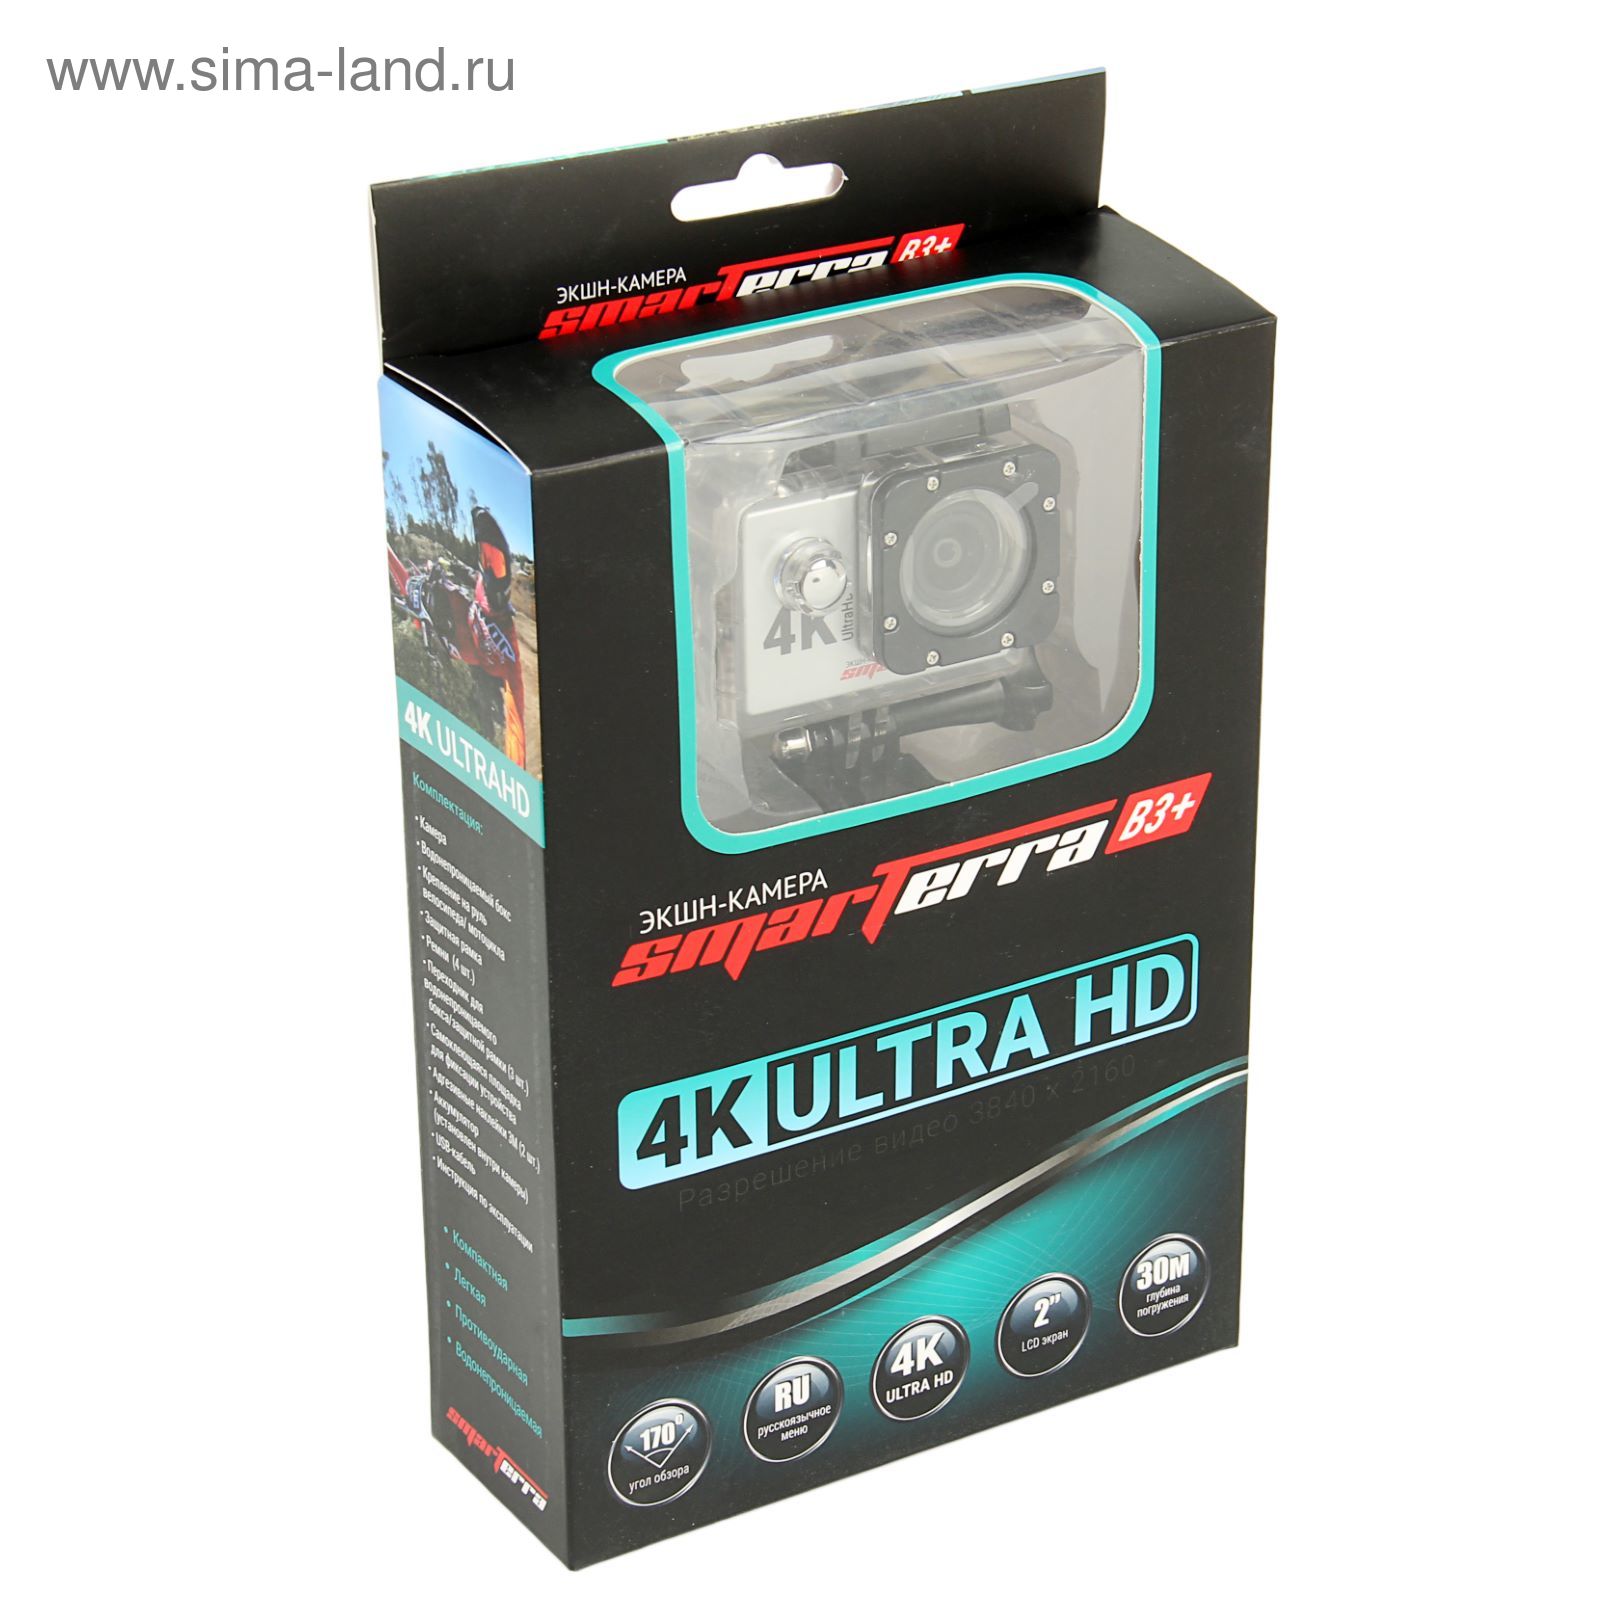 Экшн камера Smarterra B3+, 4K, 30fps, дисплей, угол обзора 170, серебристый